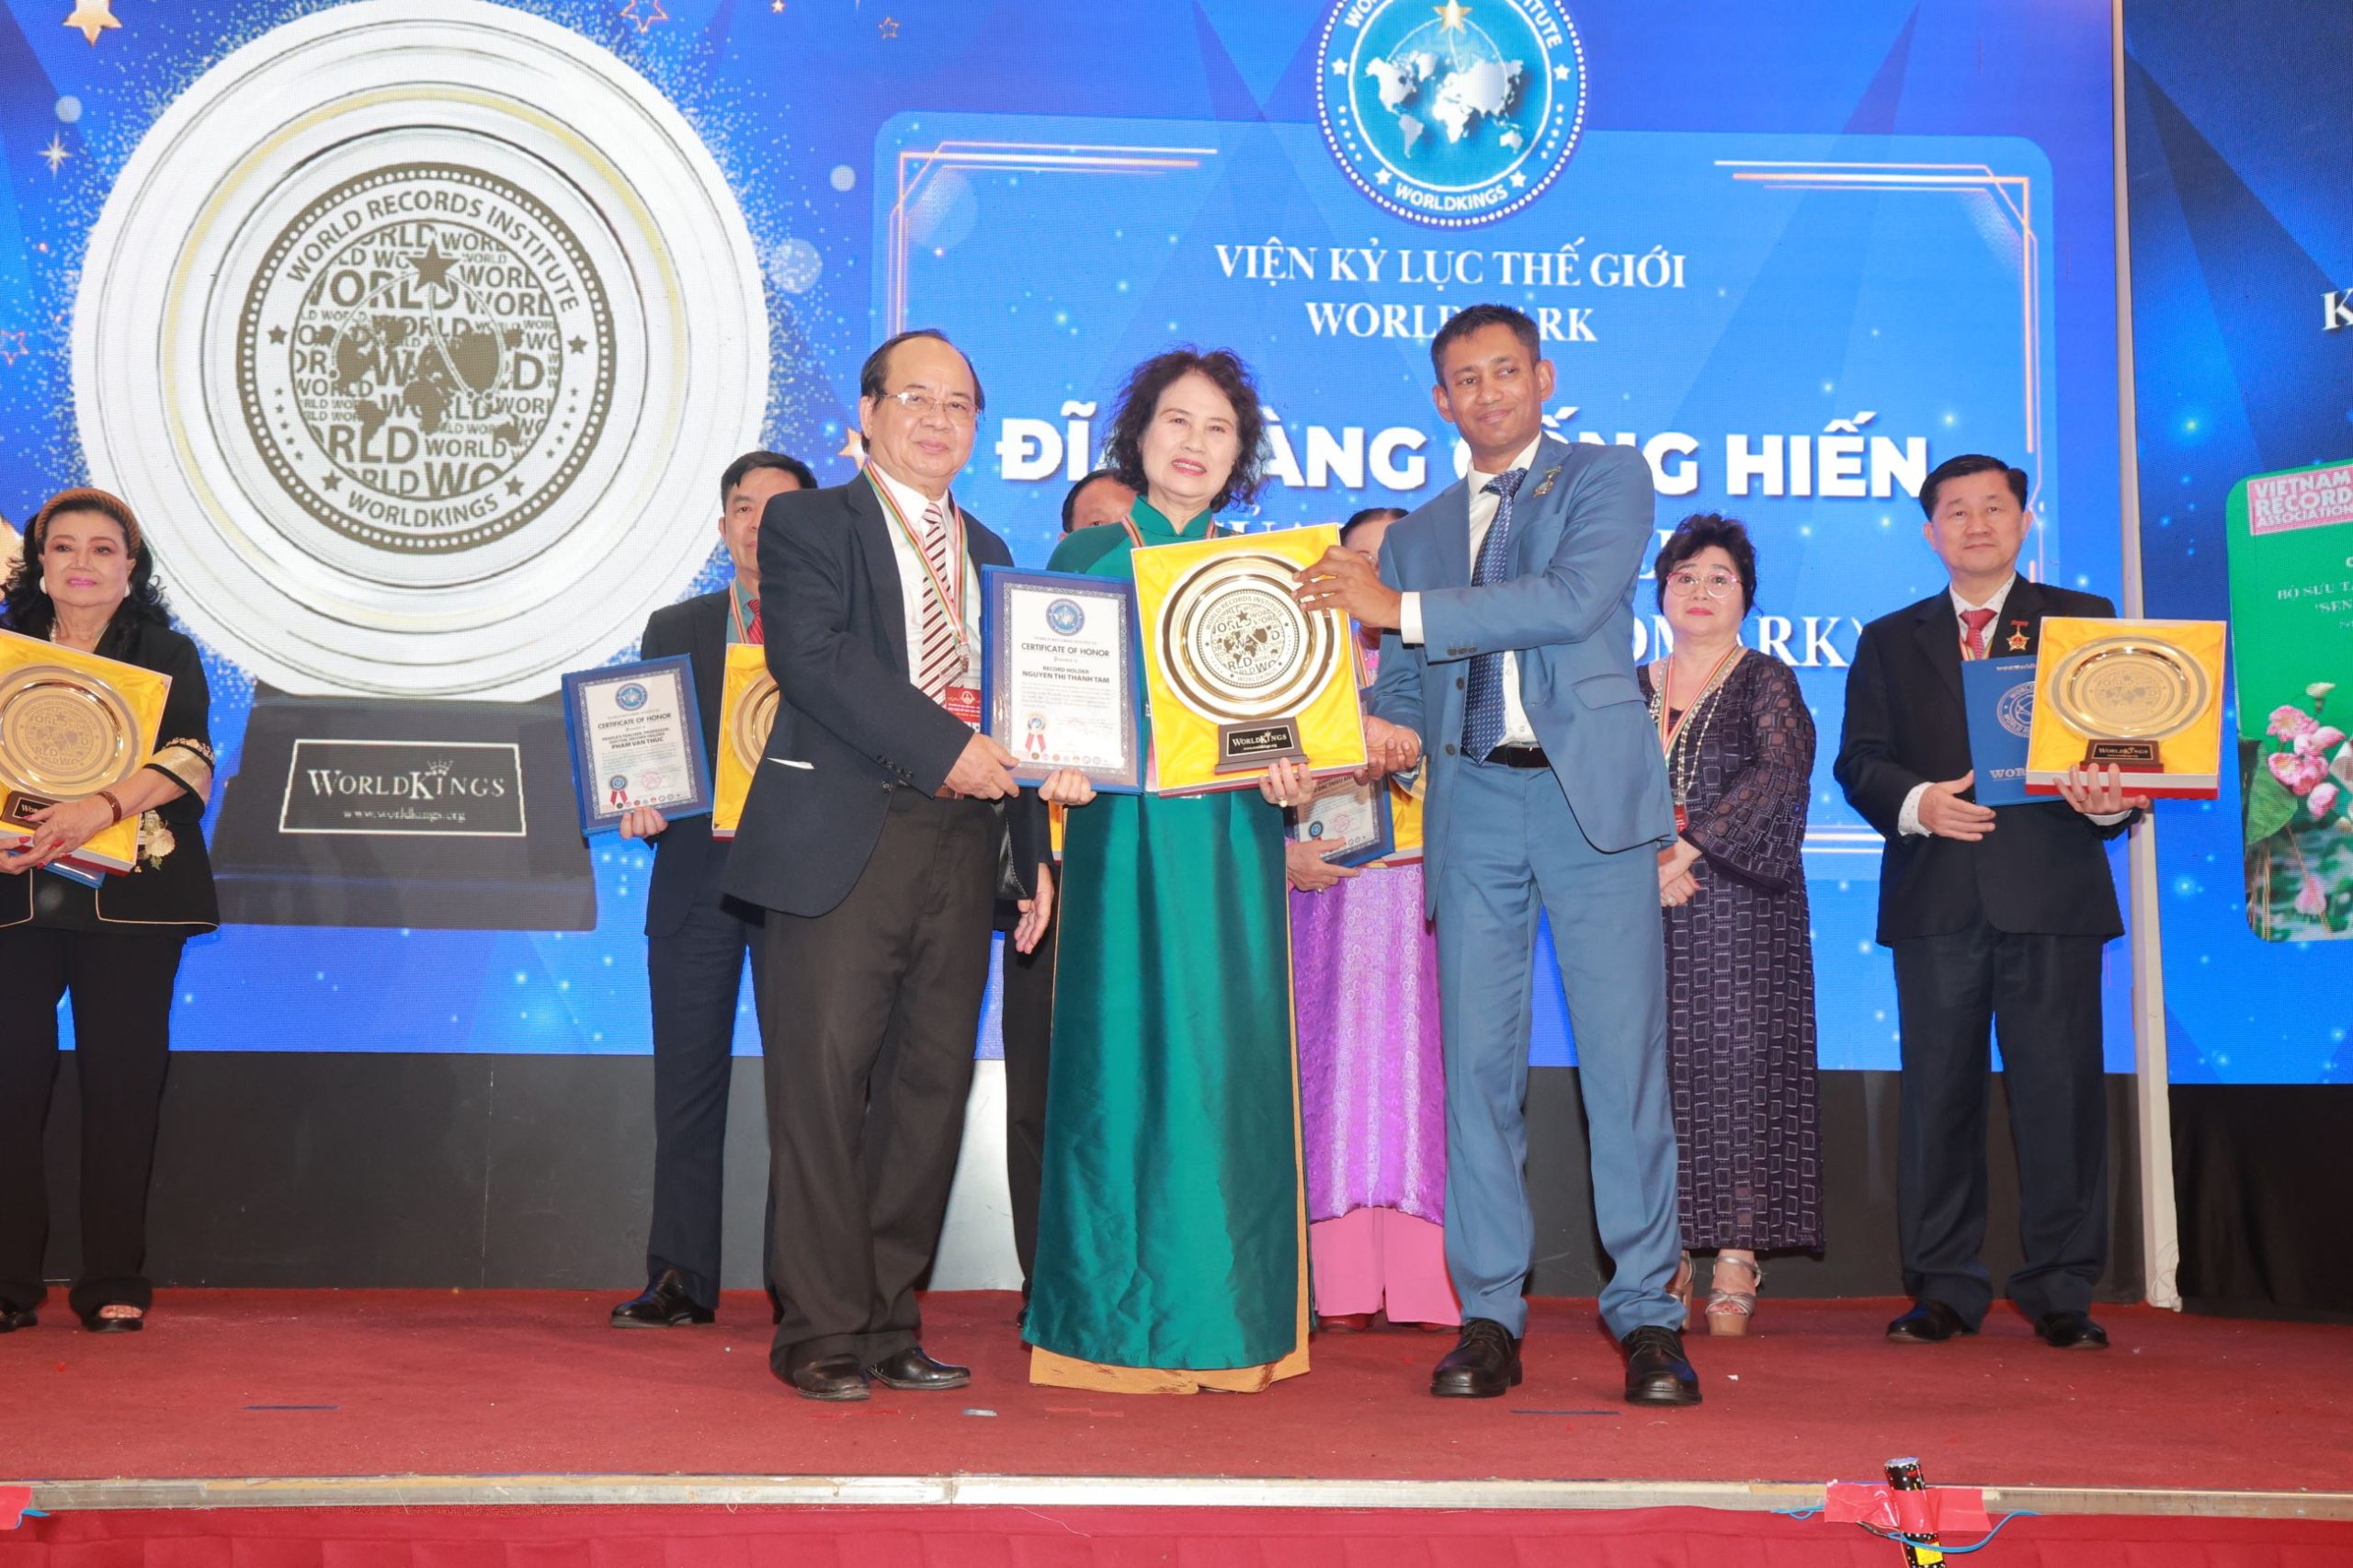 Tiến sĩ Biswaroop Roy Chowdhury và Giáo sư, Viện sĩ Hoàng Quang Thuận trao chứng nhận và Đĩa vàng Cống hiến đến Kỷ lục gia Nguyễn Thị Thanh Tâm.